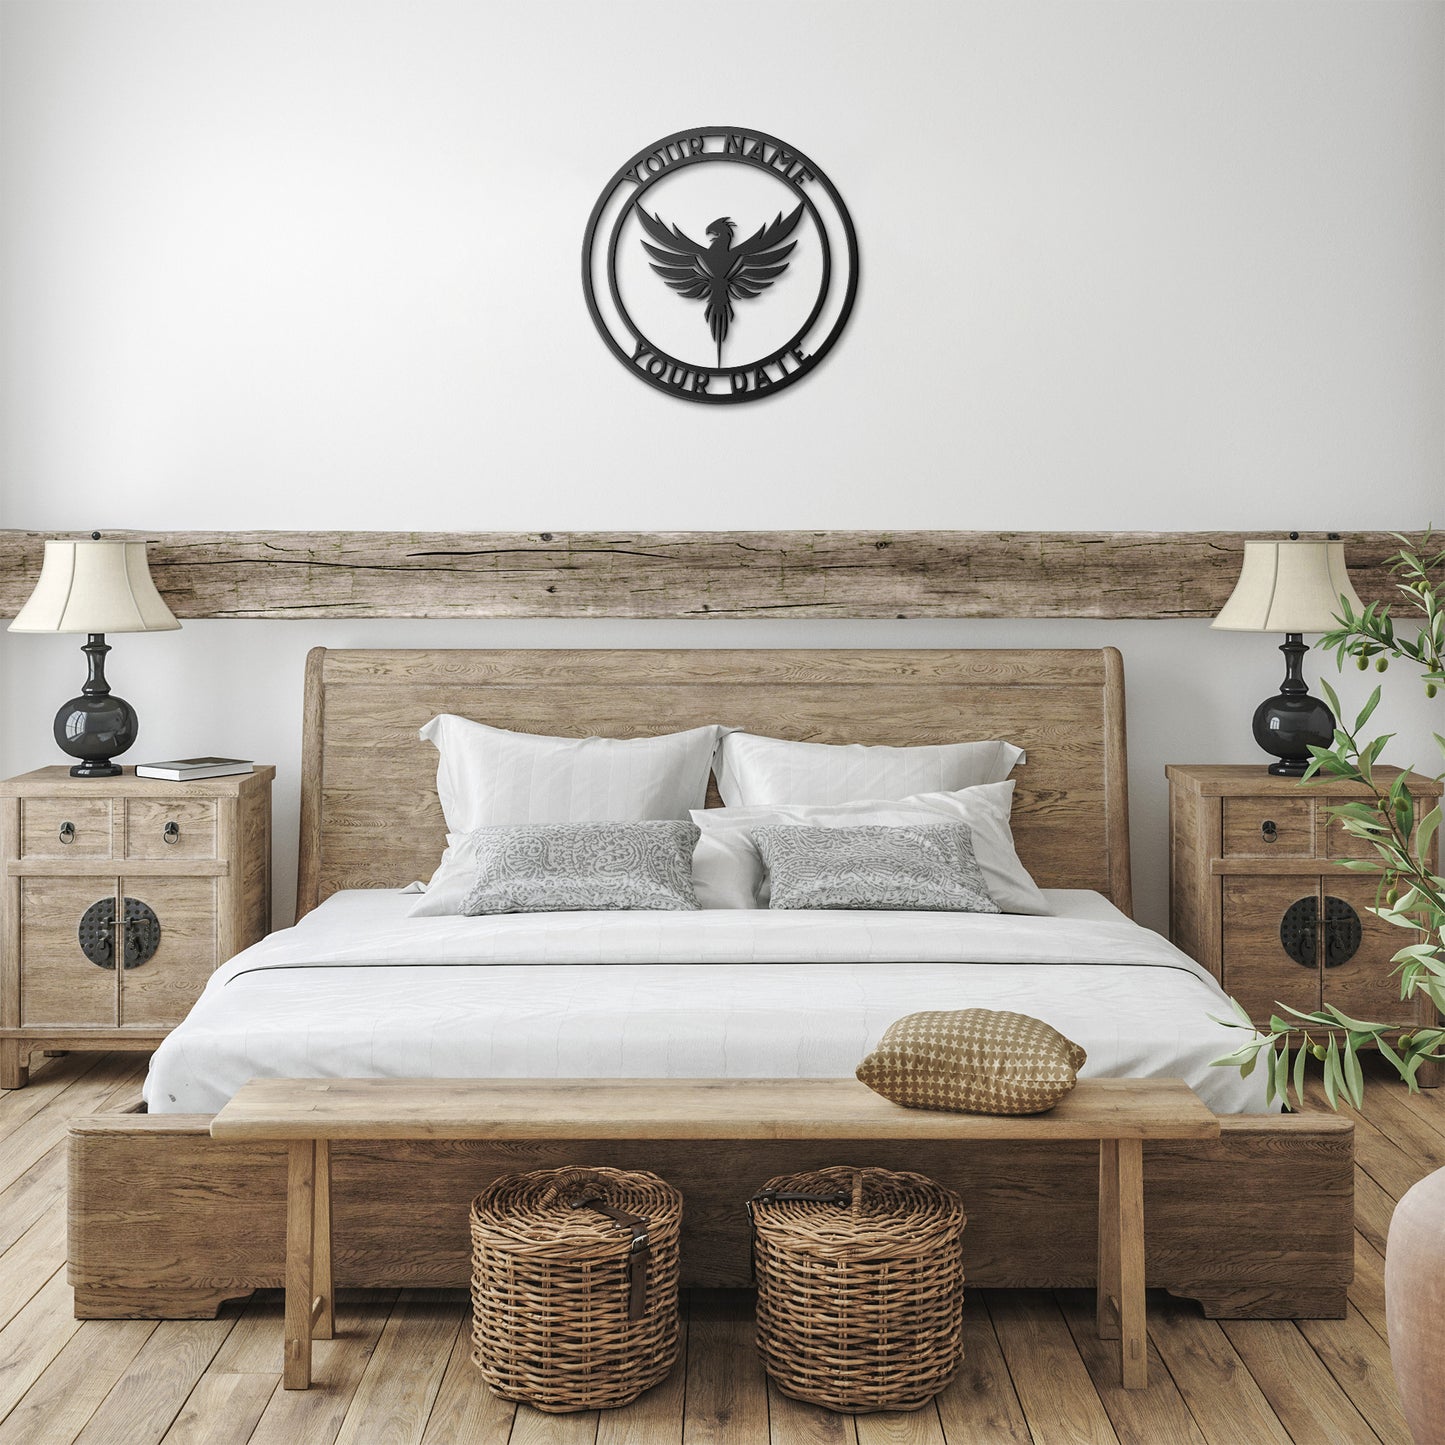 Personalized Phoenix Metal Sign - Customised Phoenix Wall Decor, Nurse Phoenix Wall Art Signs Customized Outdoor Indoor